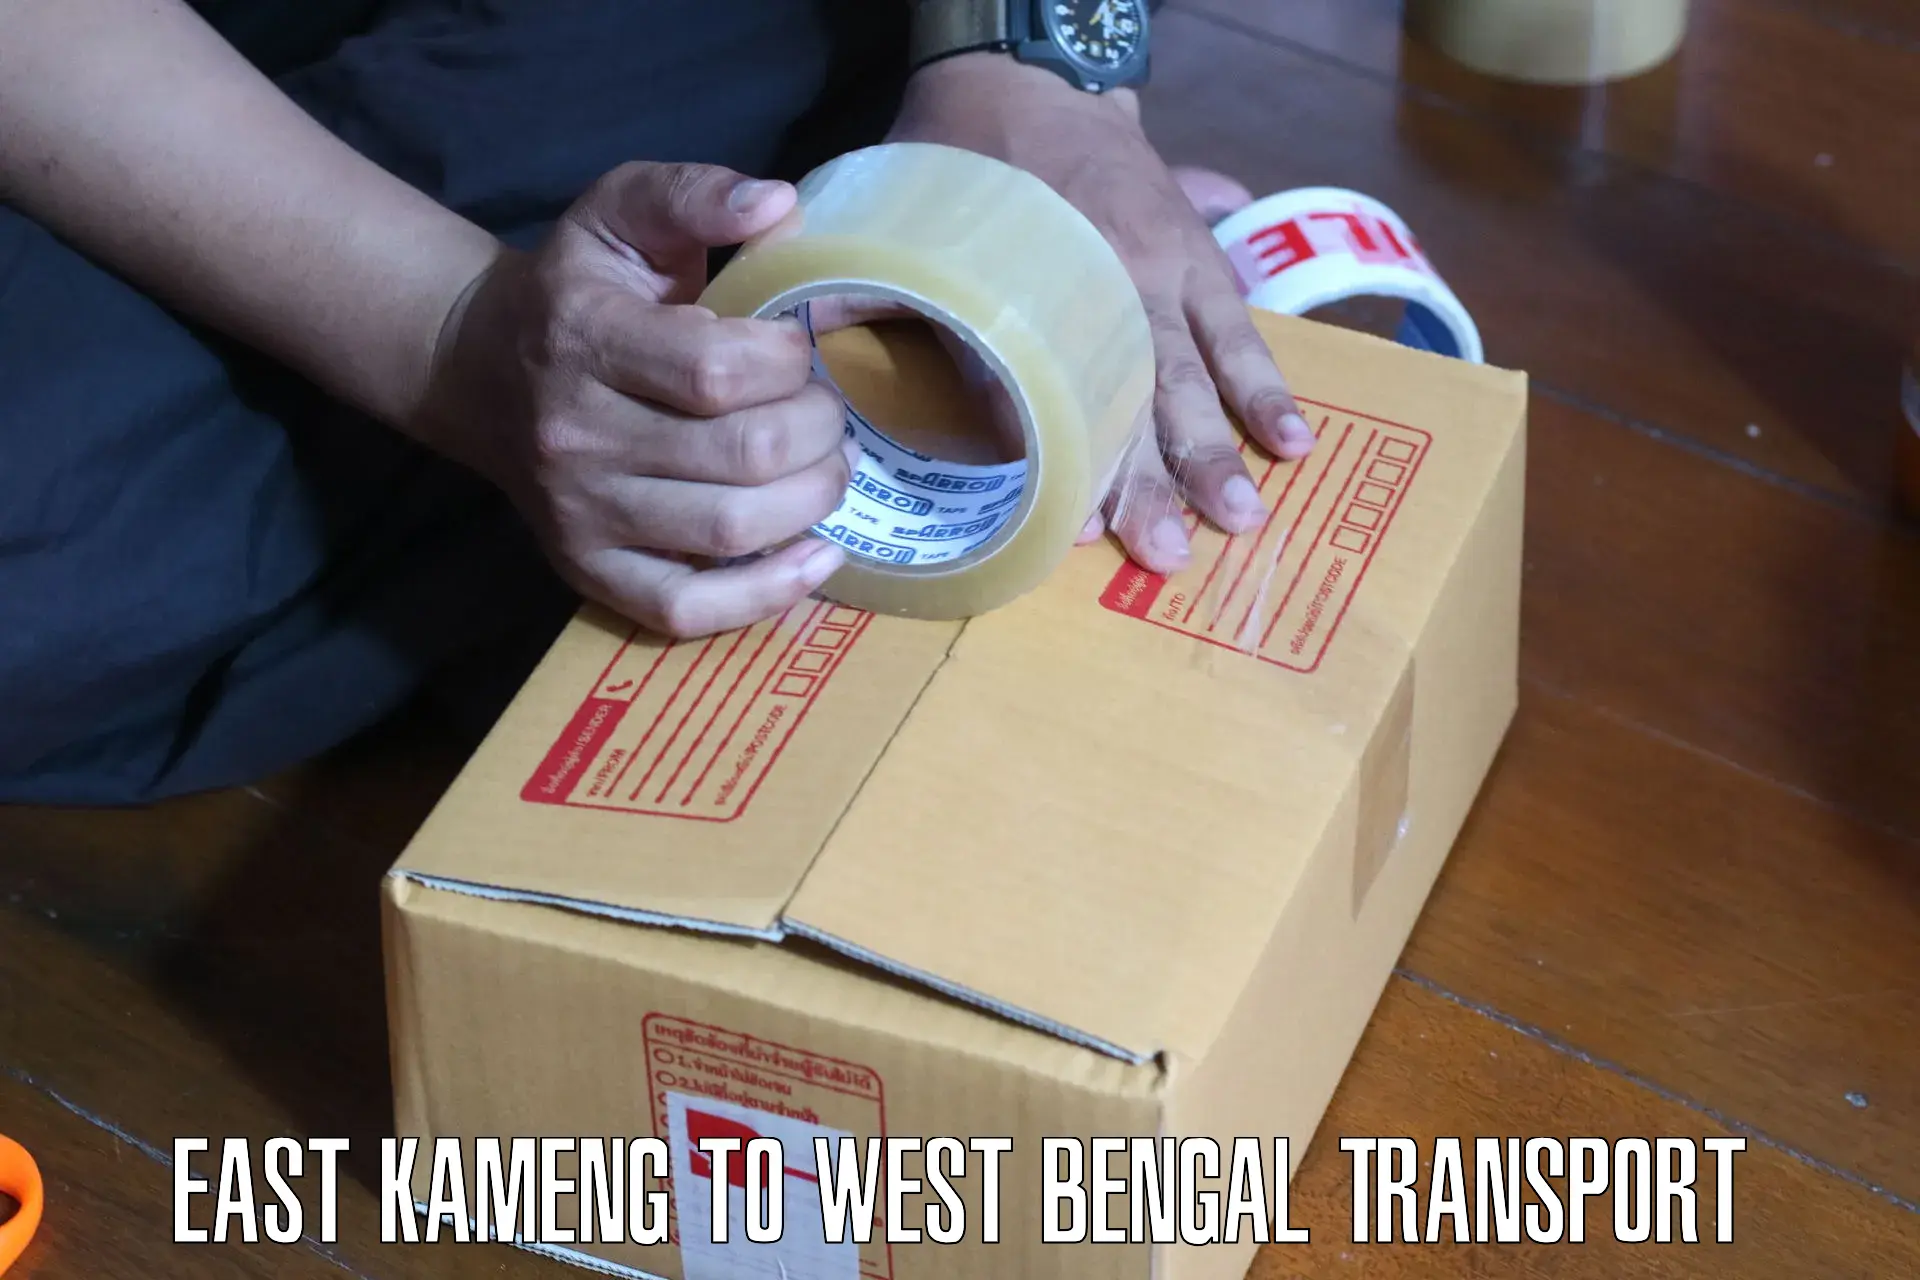 Online transport service East Kameng to Pandua